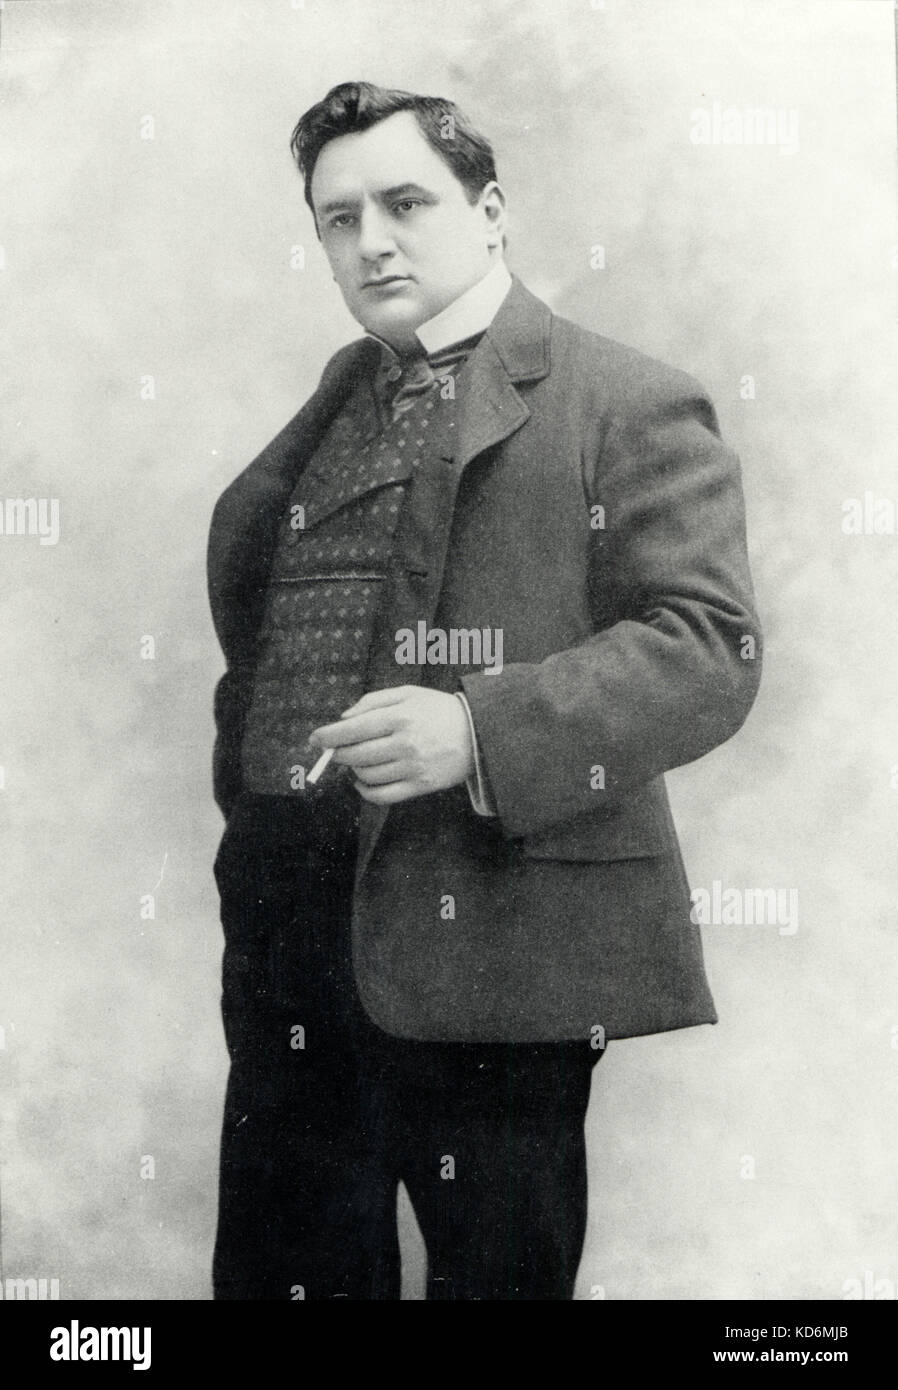 Giraldoni Eugenio, portrait de lui fumer c. 1900. Le baryton français 1871 - 1924. La différence de campagne anti-tabac de la fin du 20ème siècle. Banque D'Images